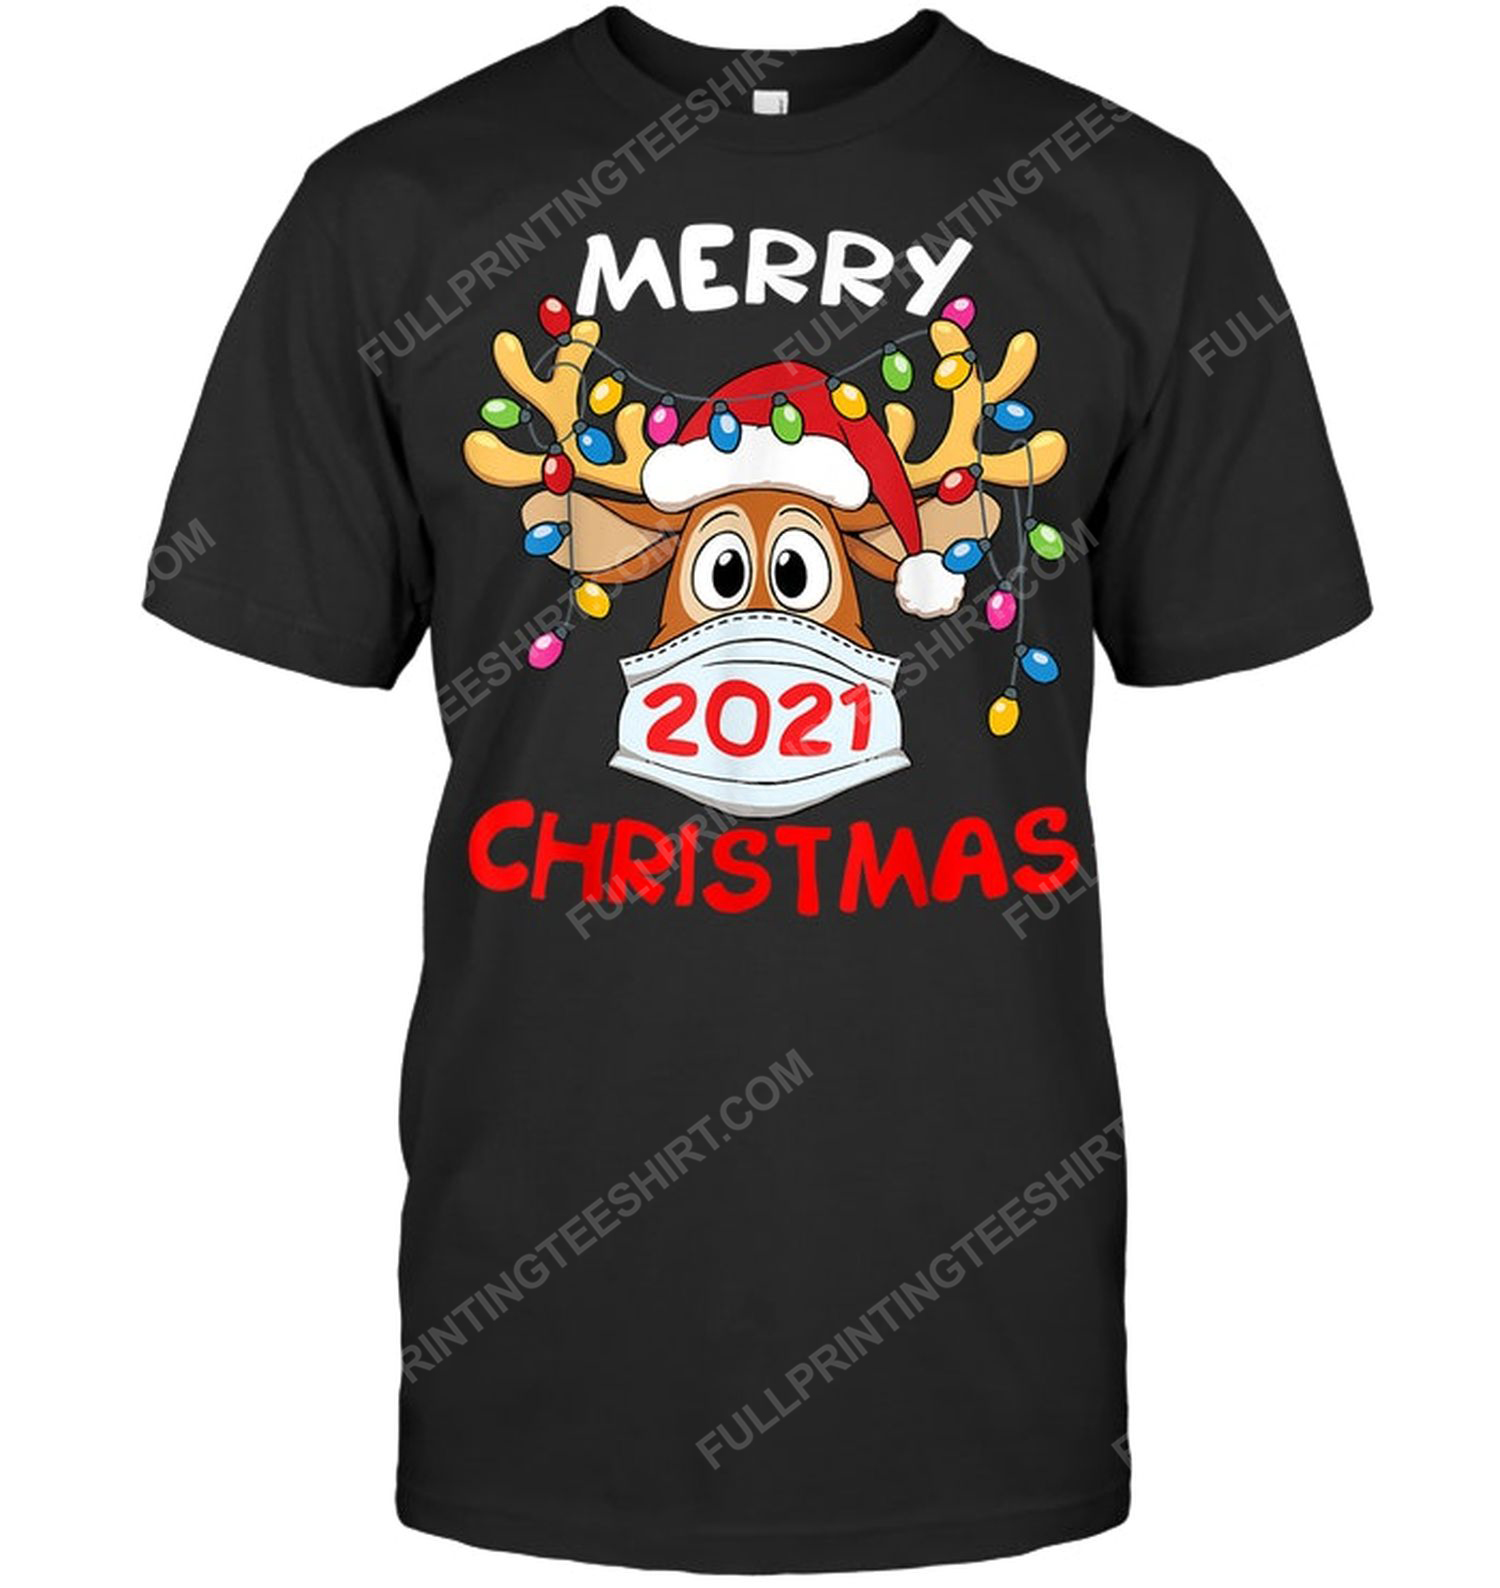 Merry christmas 2021 reindeer in mask tshirt